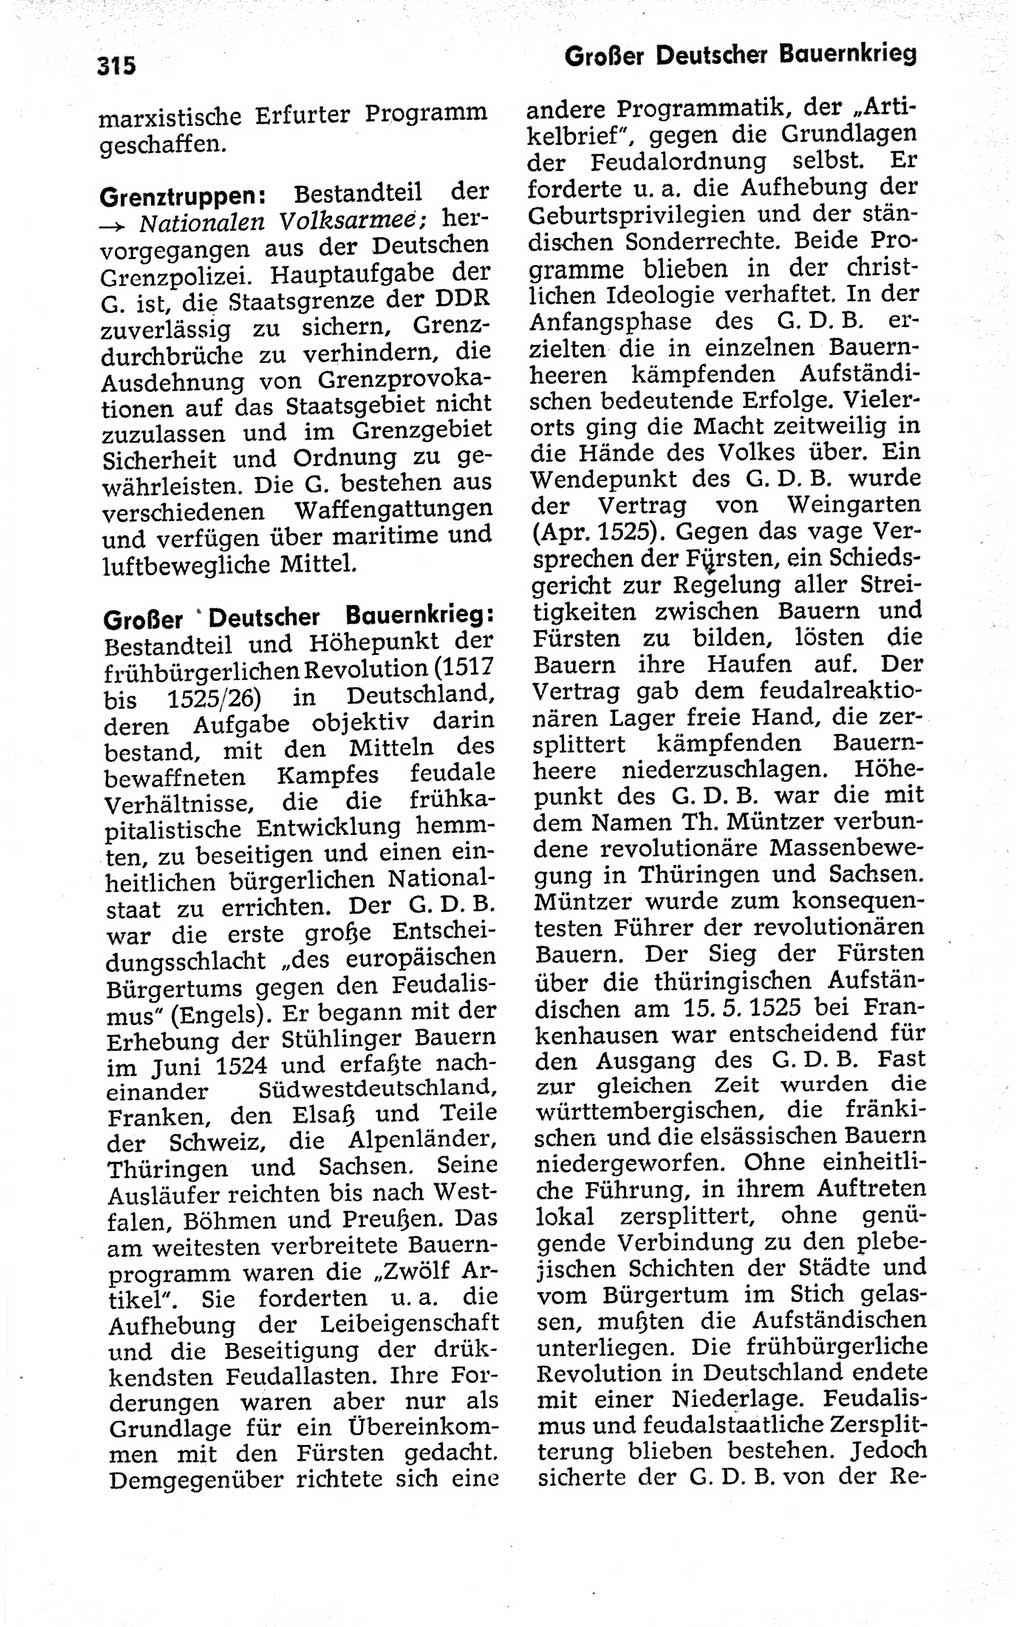 Kleines politisches Wörterbuch [Deutsche Demokratische Republik (DDR)] 1973, Seite 315 (Kl. pol. Wb. DDR 1973, S. 315)